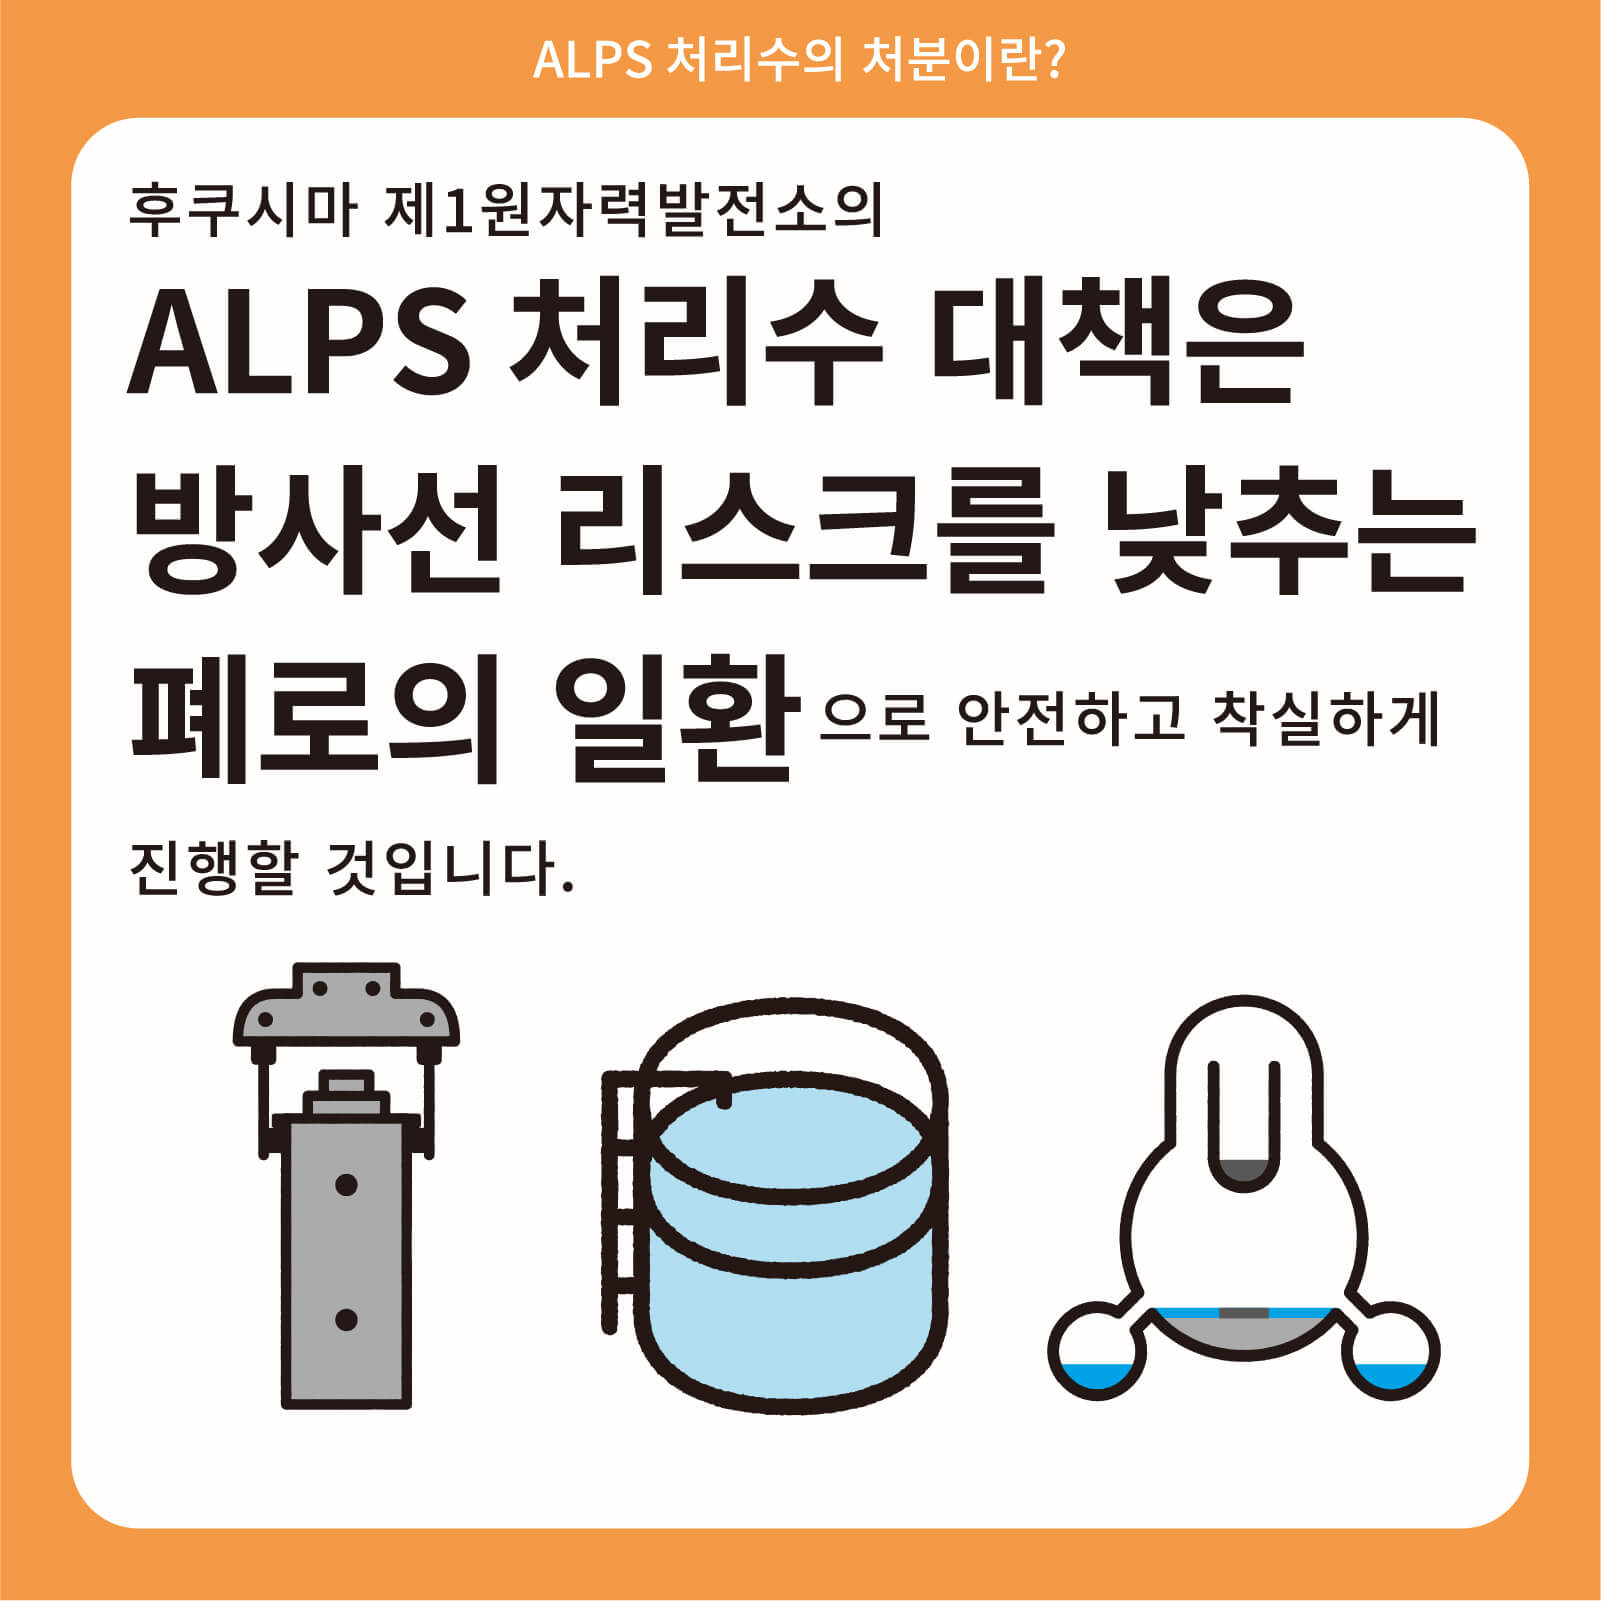 후쿠시마 제1원자력발전소의 ALPS 처리수 대책은 방사선 리스크를 낮추는 폐로의 일환으로 안전하고 착실하게 진행할 것입니다.